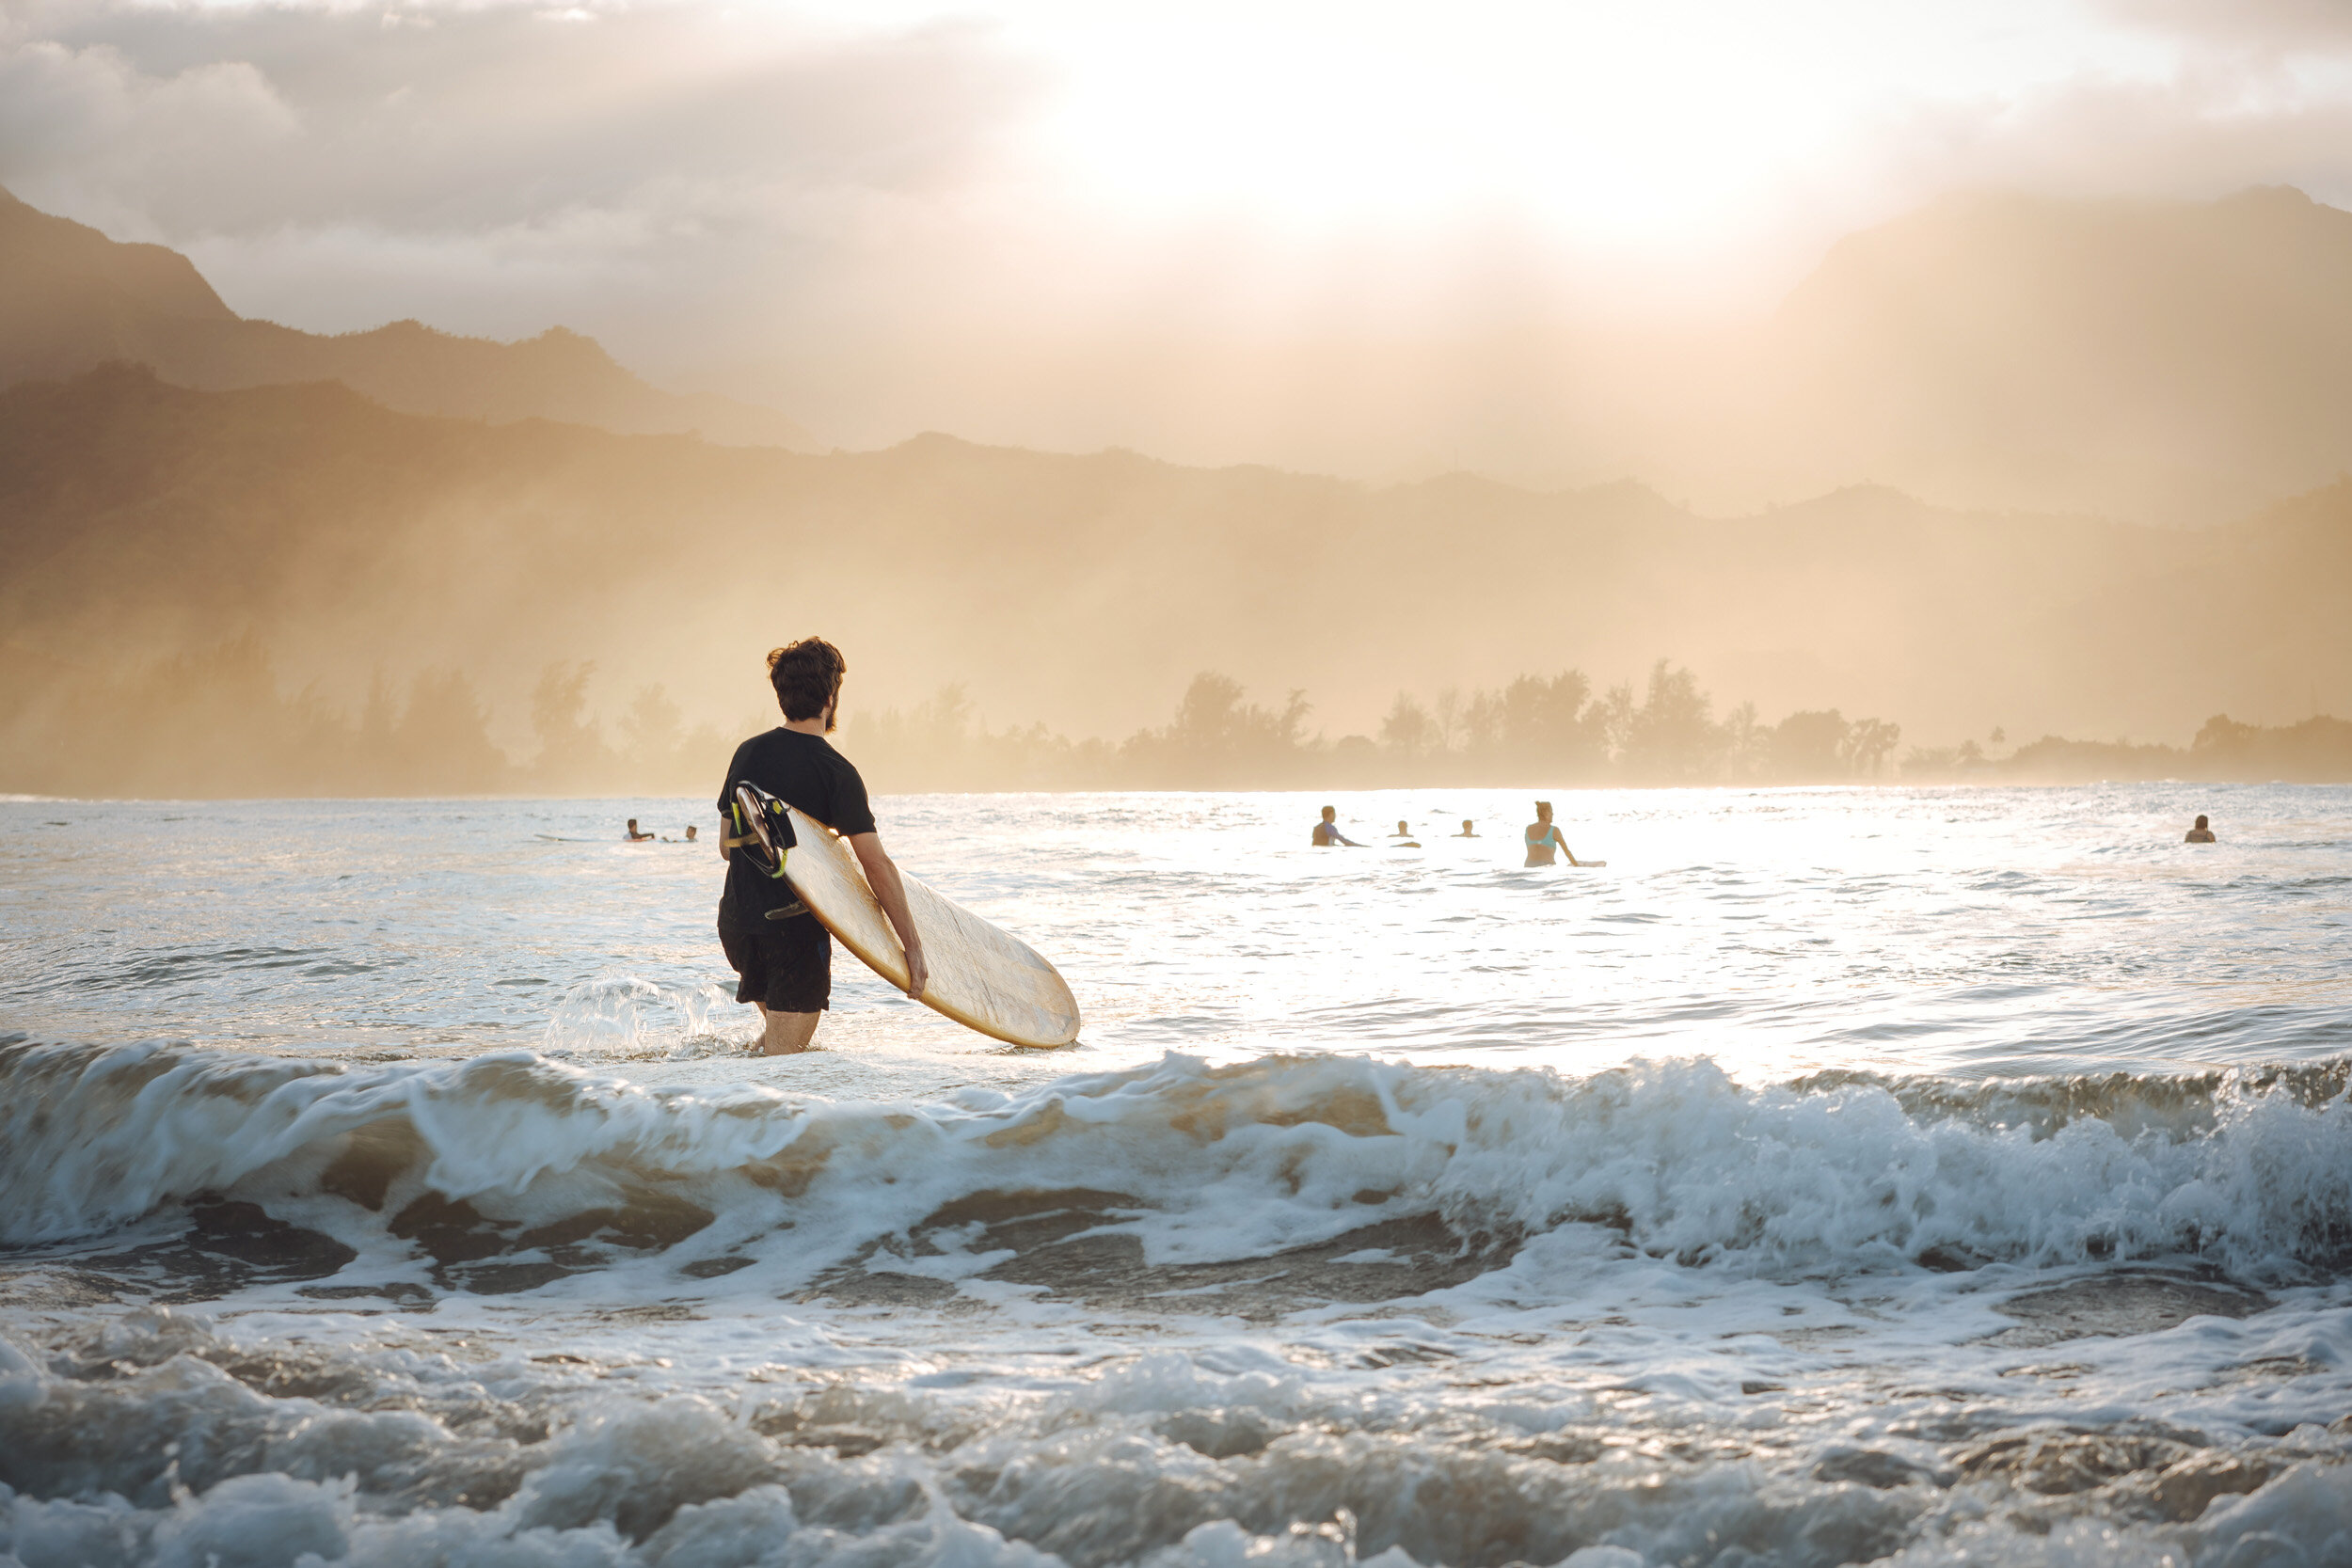 surfer-in-hawaii-ocean.jpg